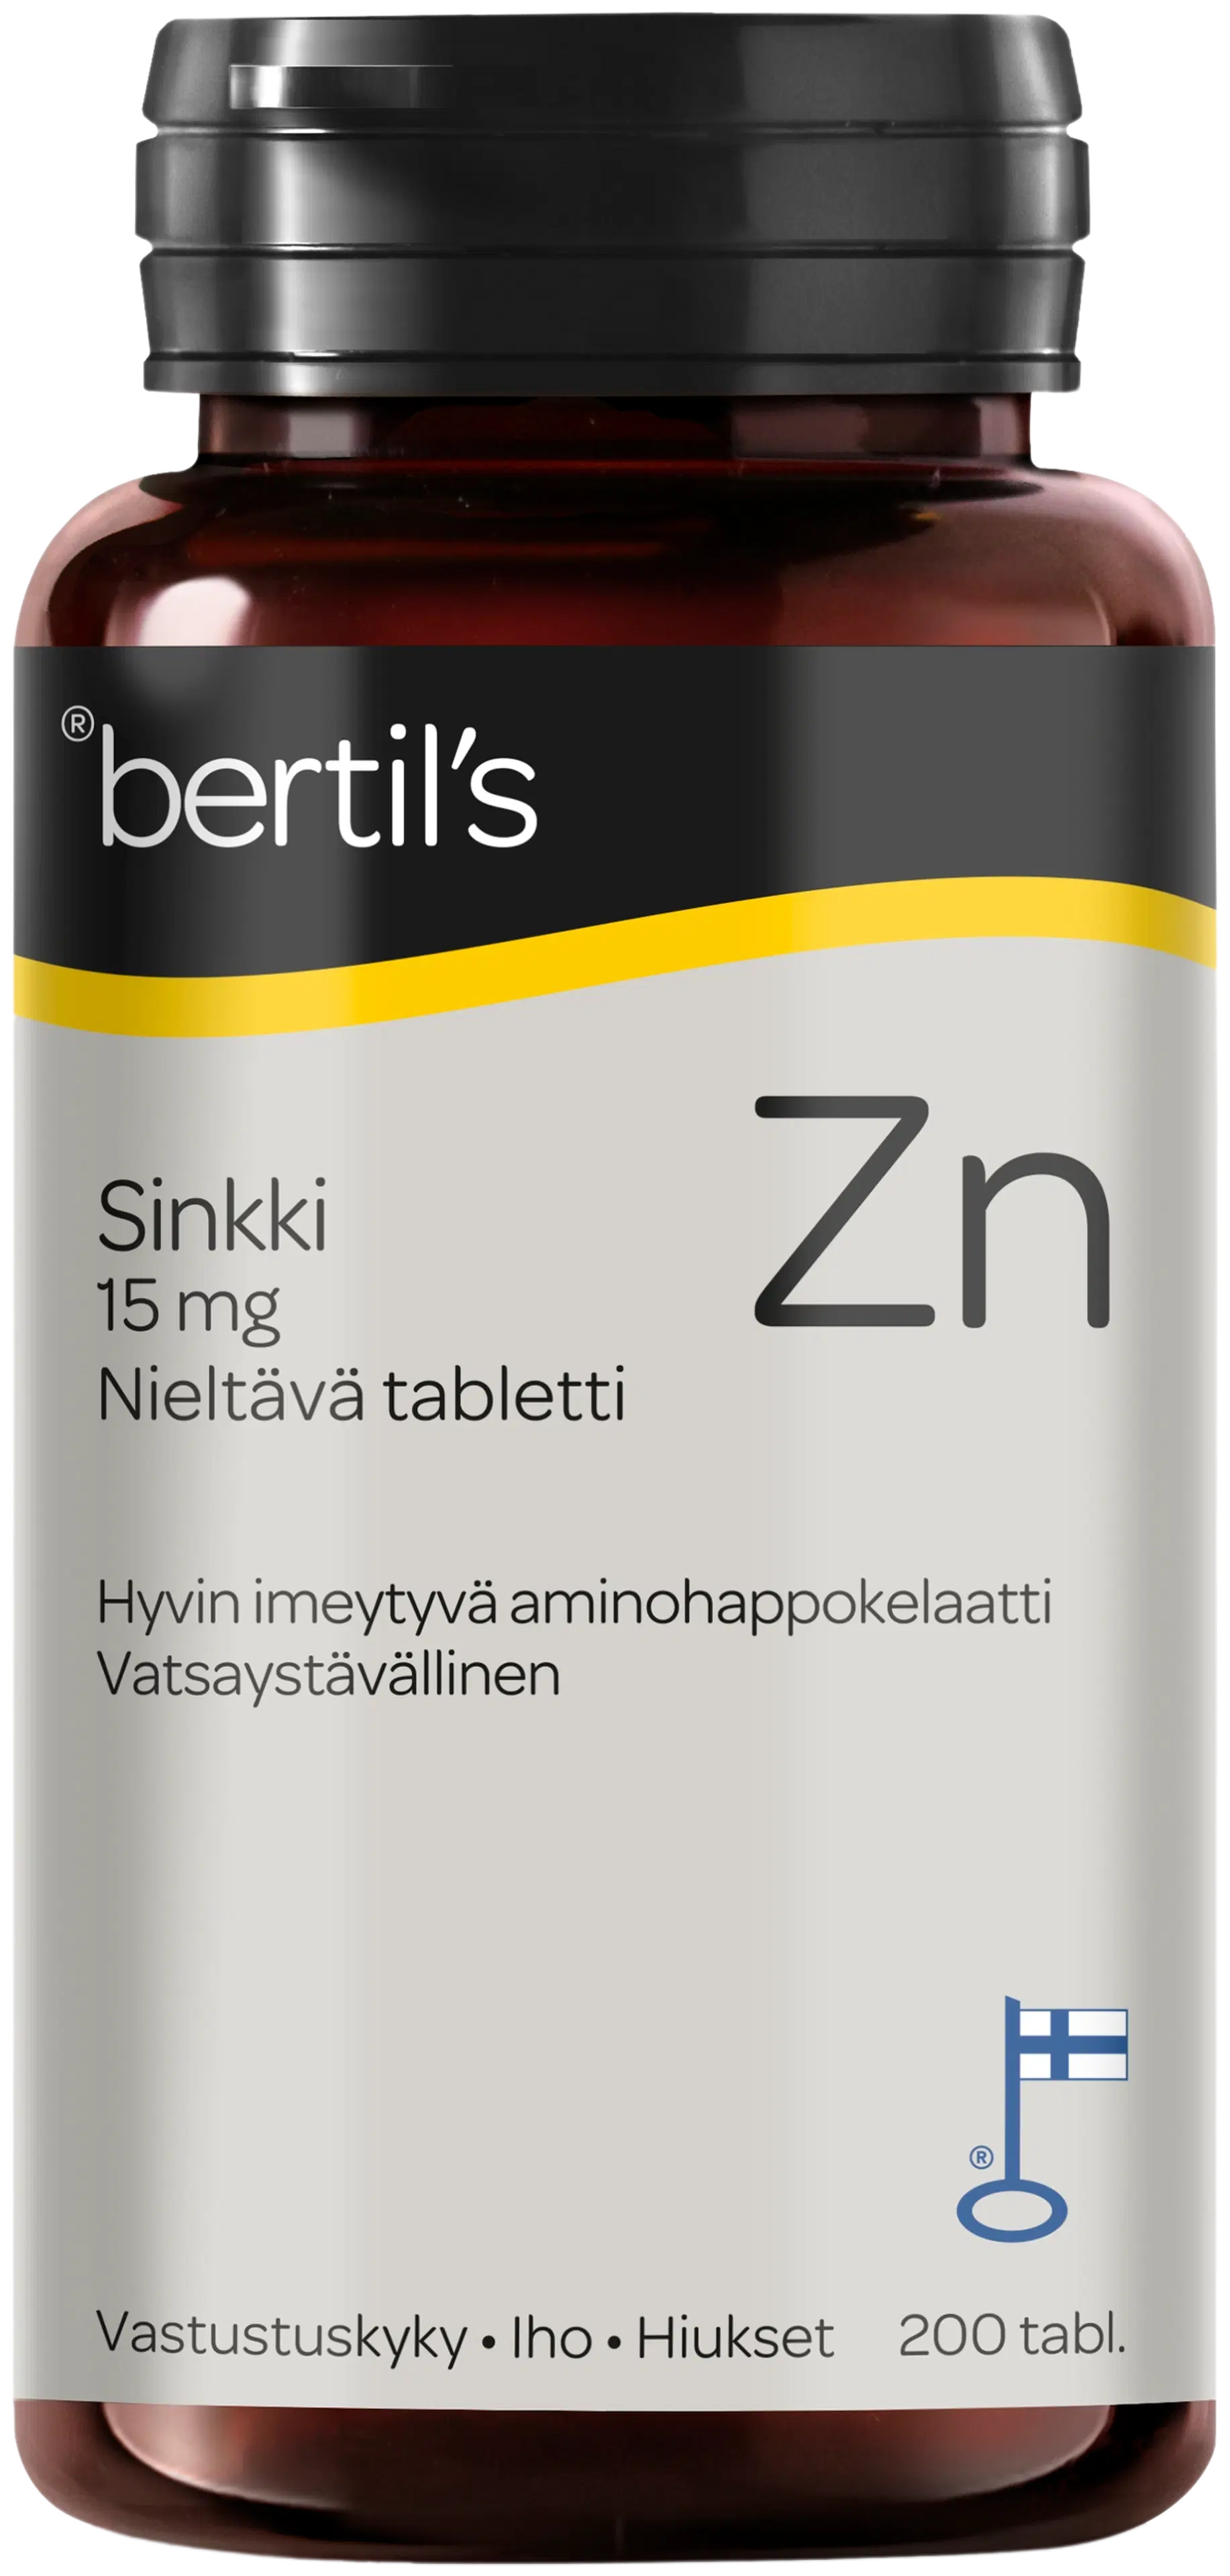 bertil's Sinkki 200 tabl.